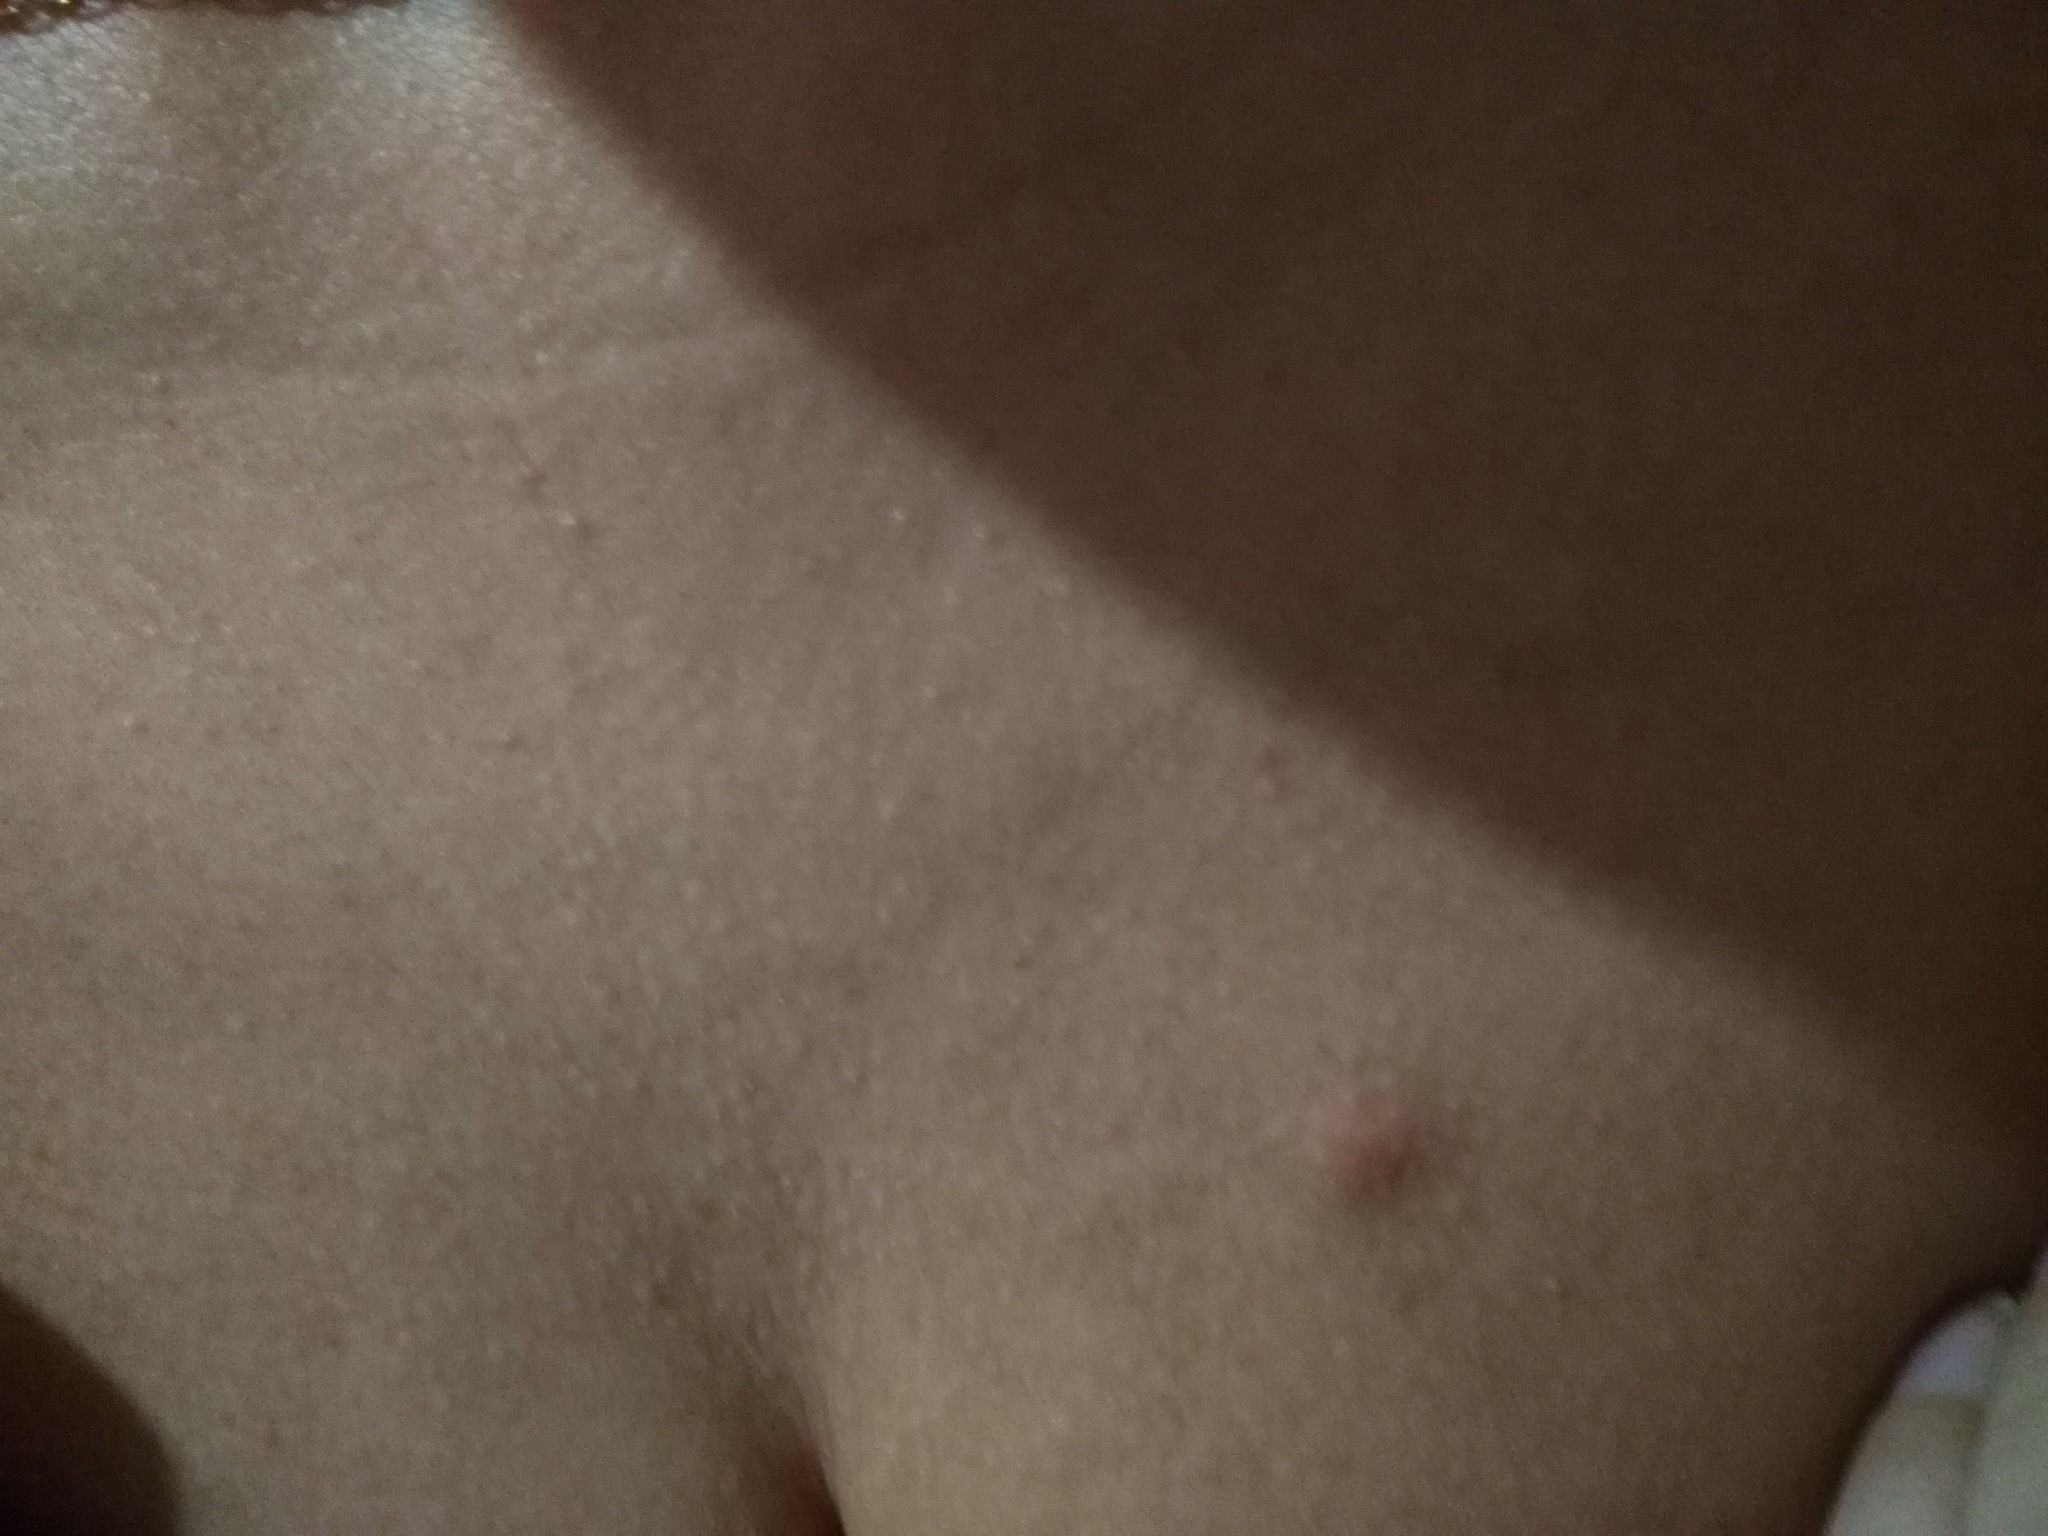 уплотнение в районе груди мужчин фото 46